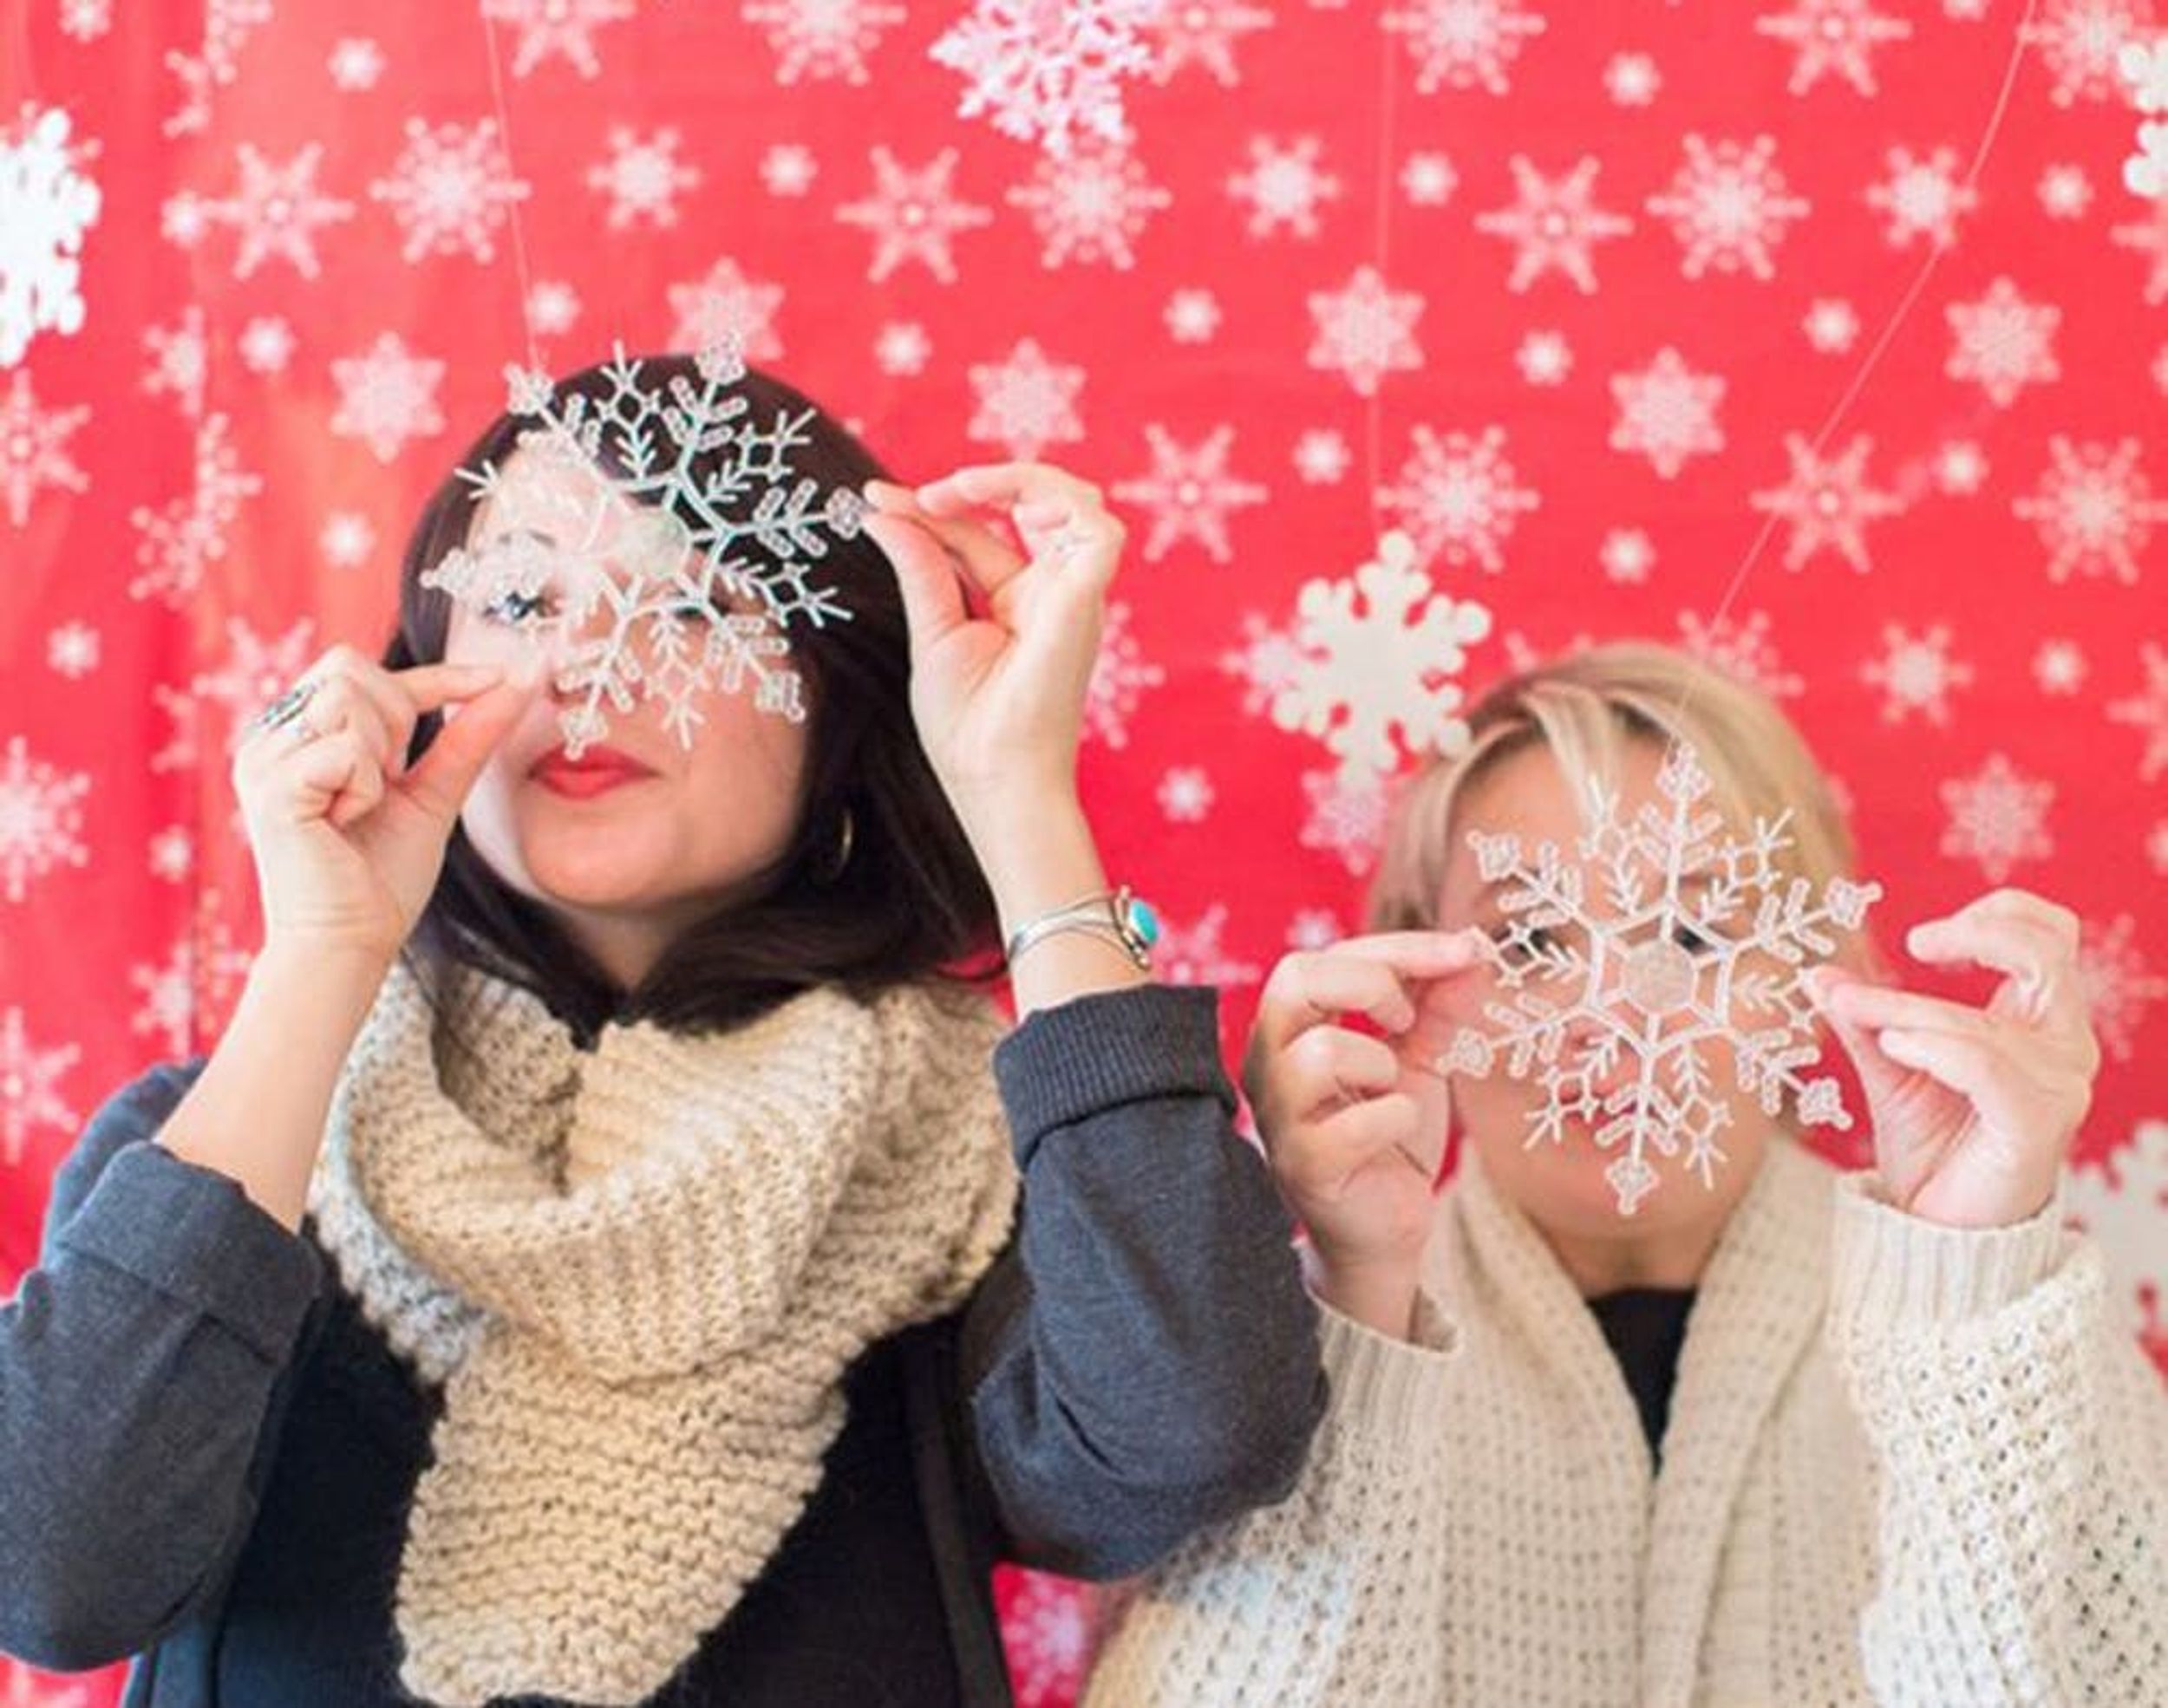 ‘Tis the Season to Smile: 15 Holiday Photo Booth Ideas